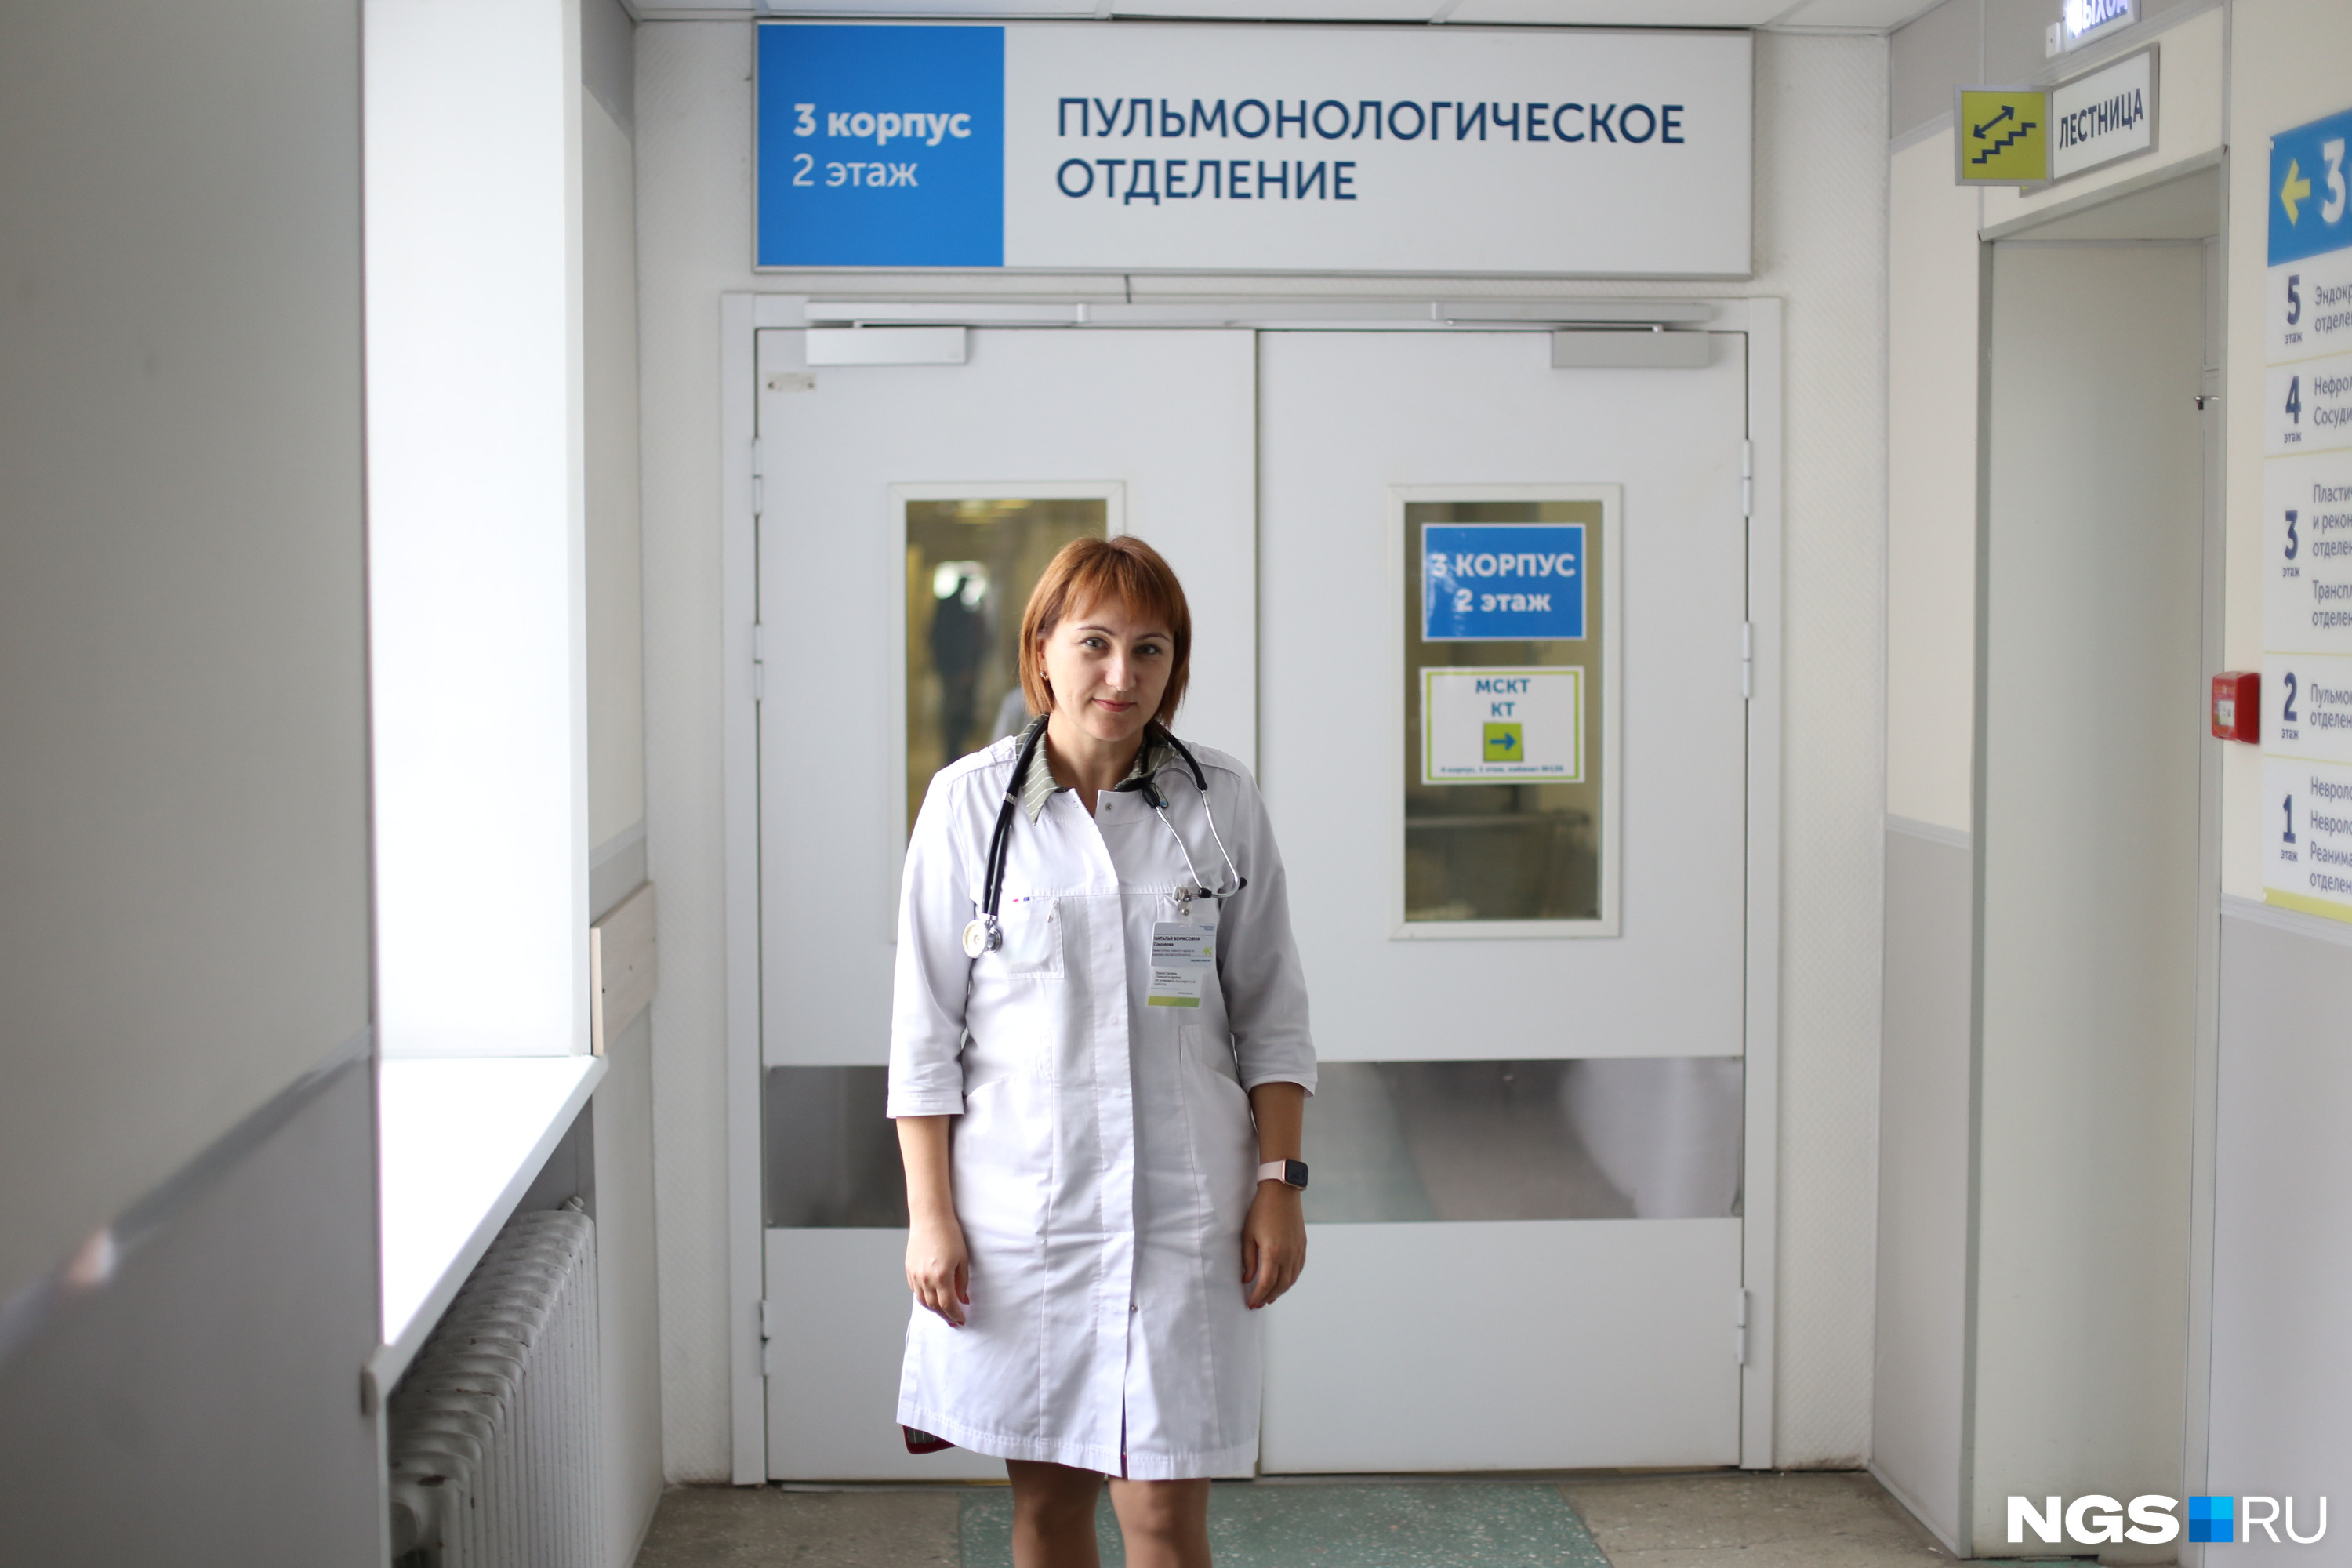 Наталья Соколова говорит, что больница и раньше лечила беременных женщин с пневмониями, а официально делает это с 2009 года, когда была эпидемия свиного гриппа